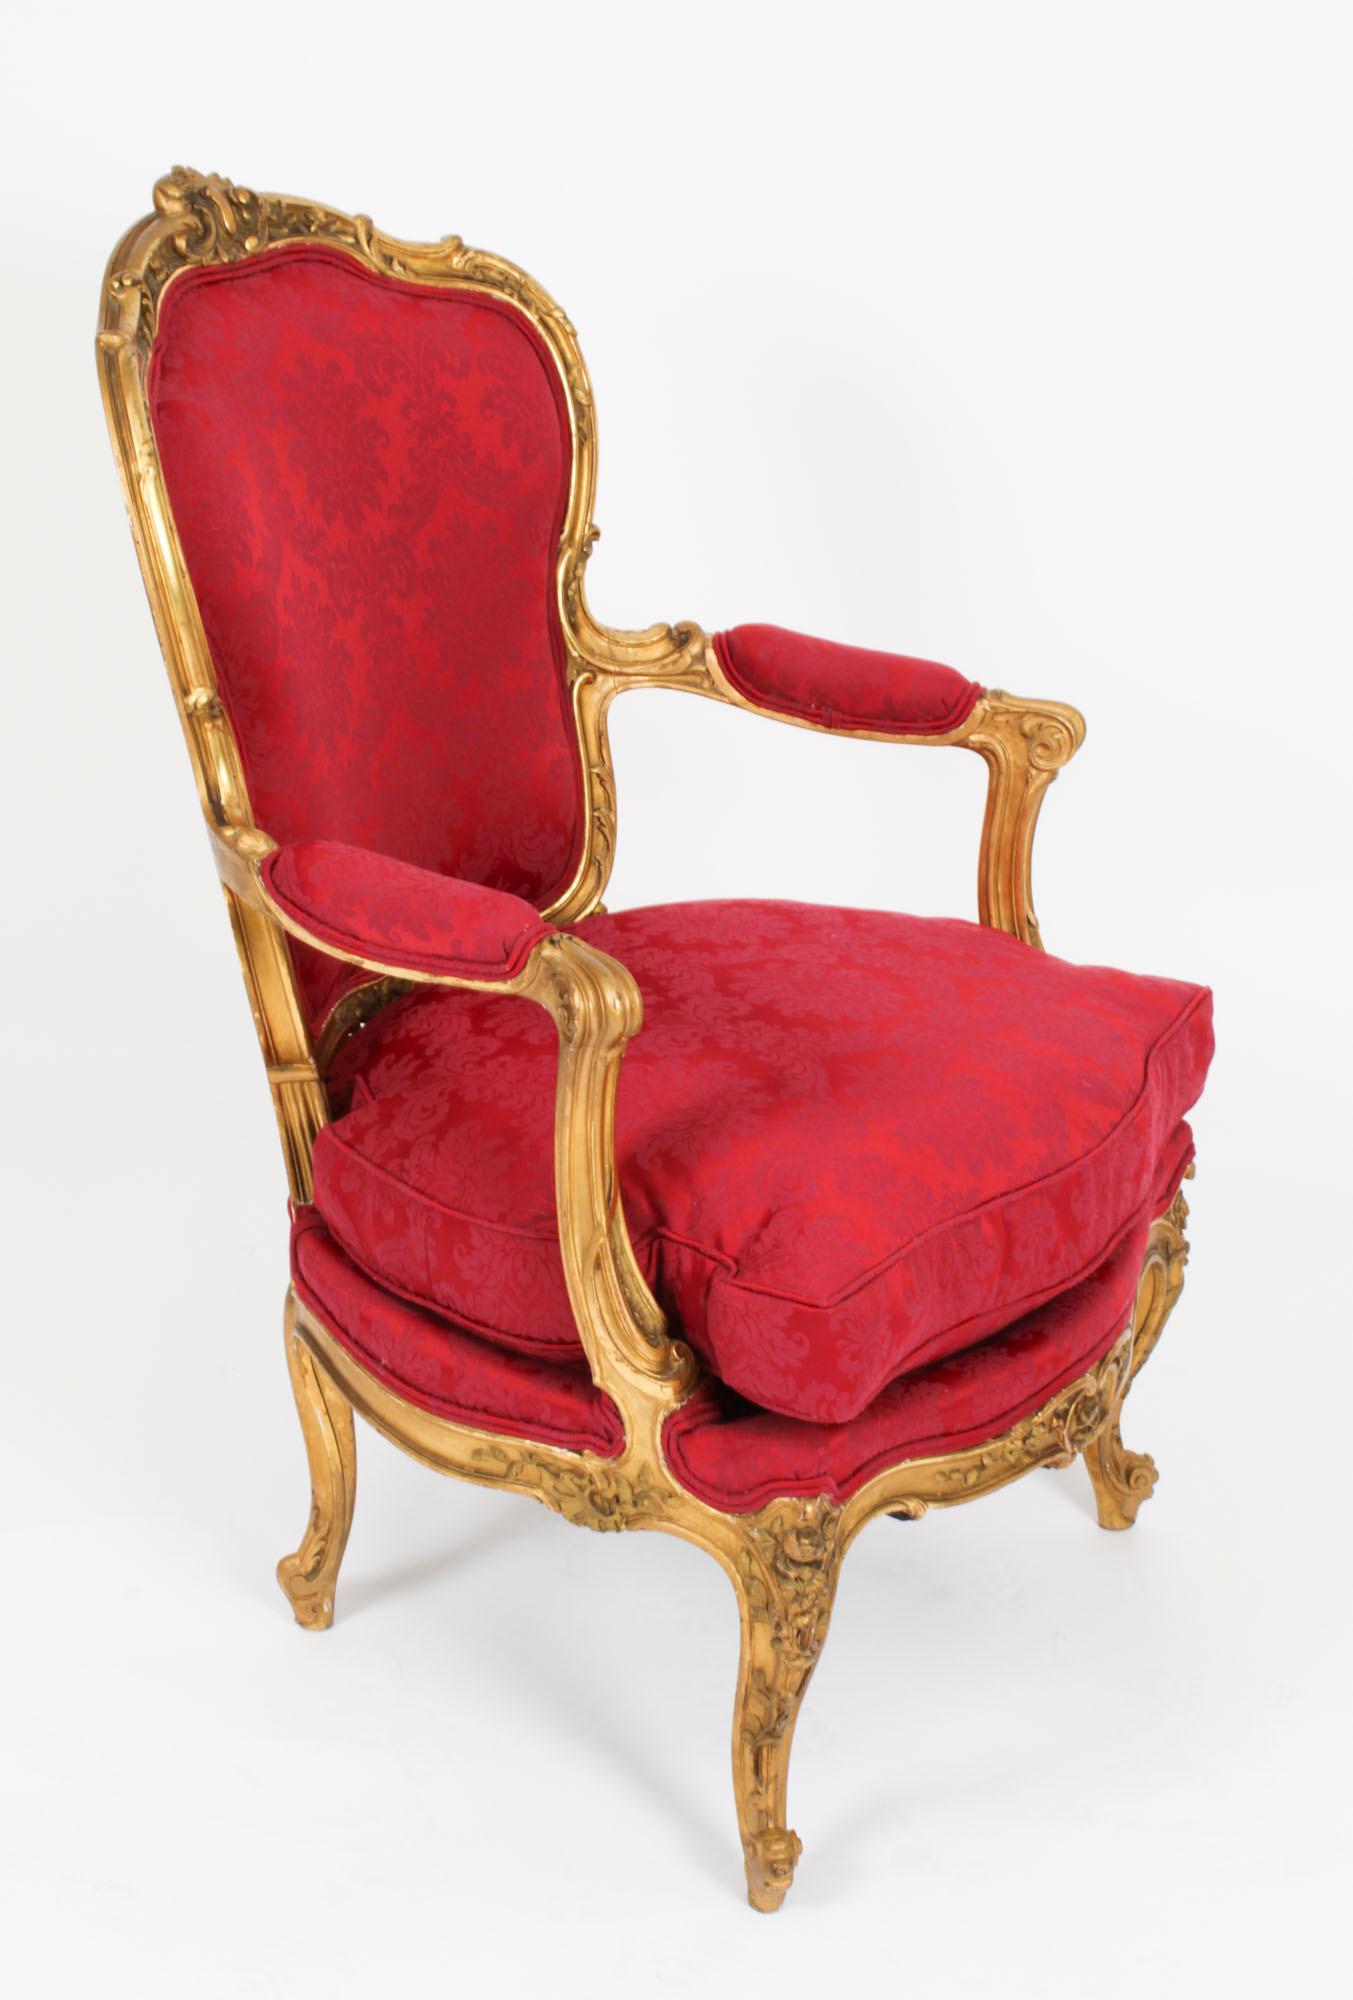 Il s'agit d'une belle paire de fauteuils ouverts en bois doré de style Louis XV Revival, datant d'environ 1880.   
 
Le bois doré d'origine est d'une couleur magnifique. Chaque chaise est dotée d'un plateau à crête floral sculpté, de supports